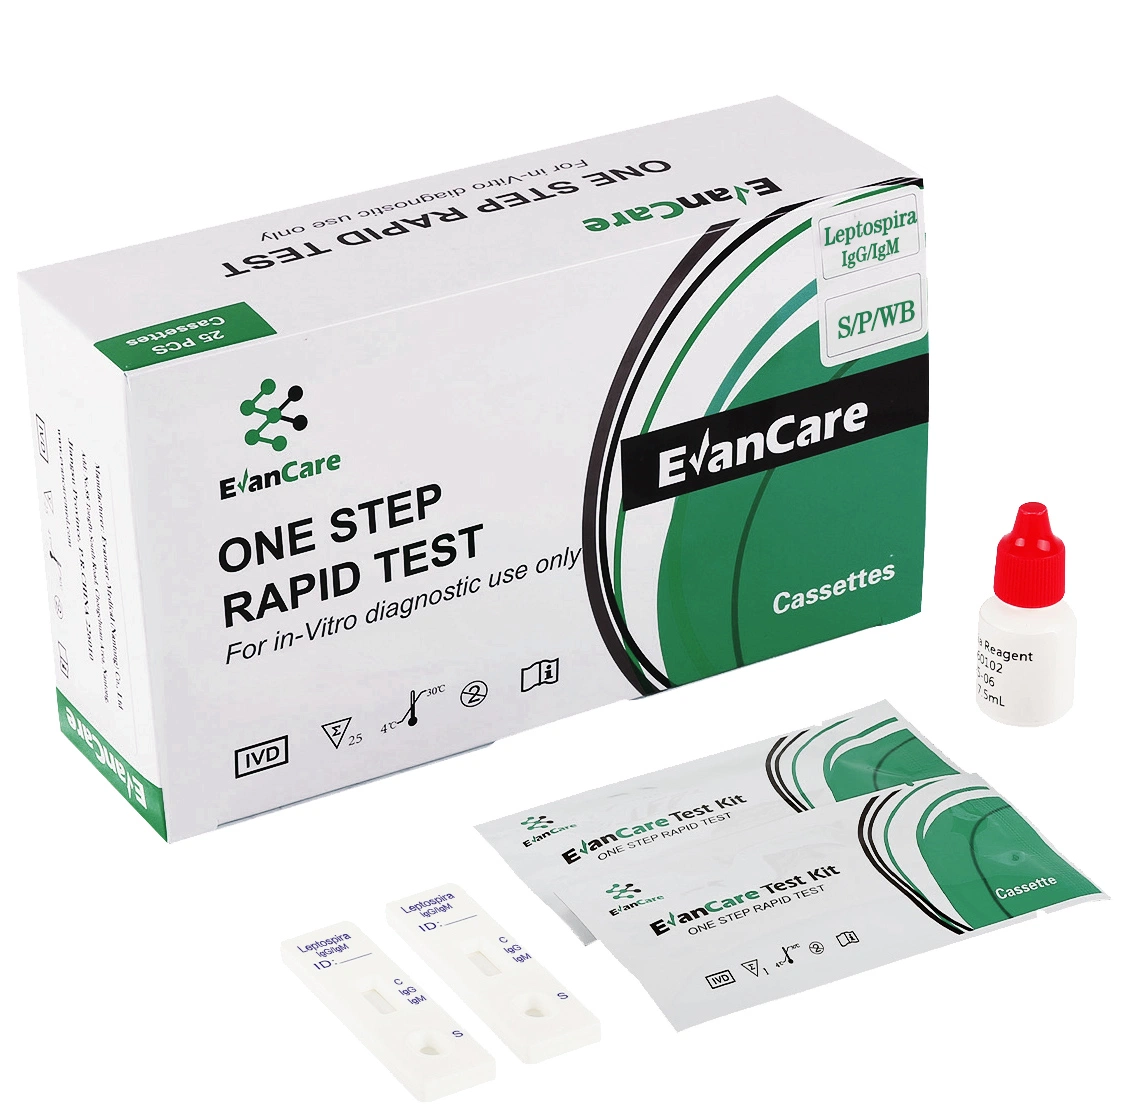 Медицинские устройства Leptospira IGG/IGM Rapid Test Kit /Human Whole Blood Тест